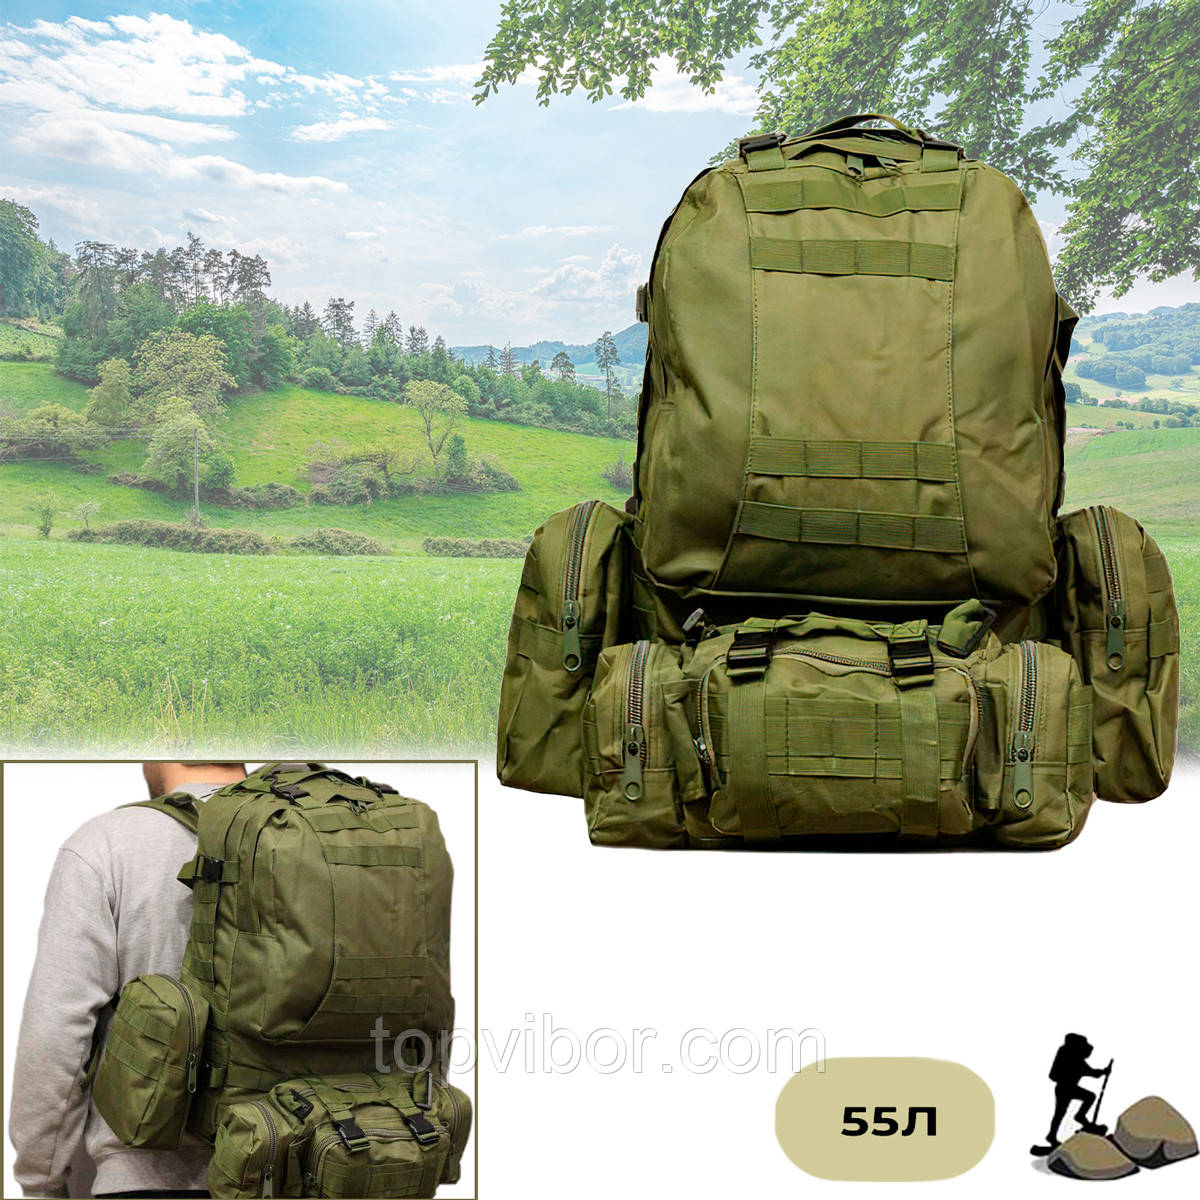 Тактичний рюкзак з підсумками "B08 oliva - Оливковий" 55л, рюкзак штурмовий чоловічий (рюкзак тактический), фото 1